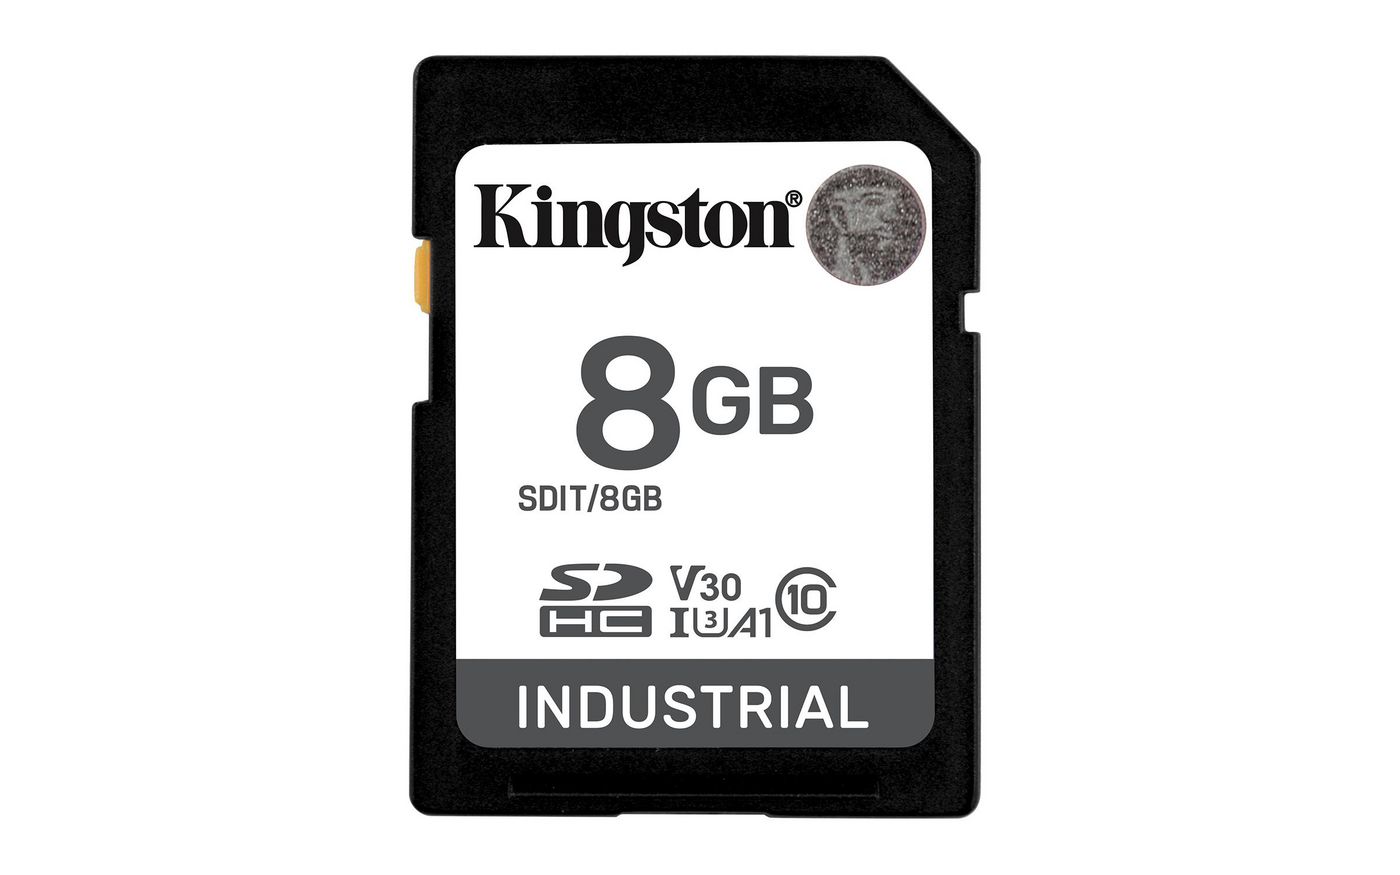 Kingston SDIT8GB W128563970 Memory Card Sdxc Uhs-I Class 